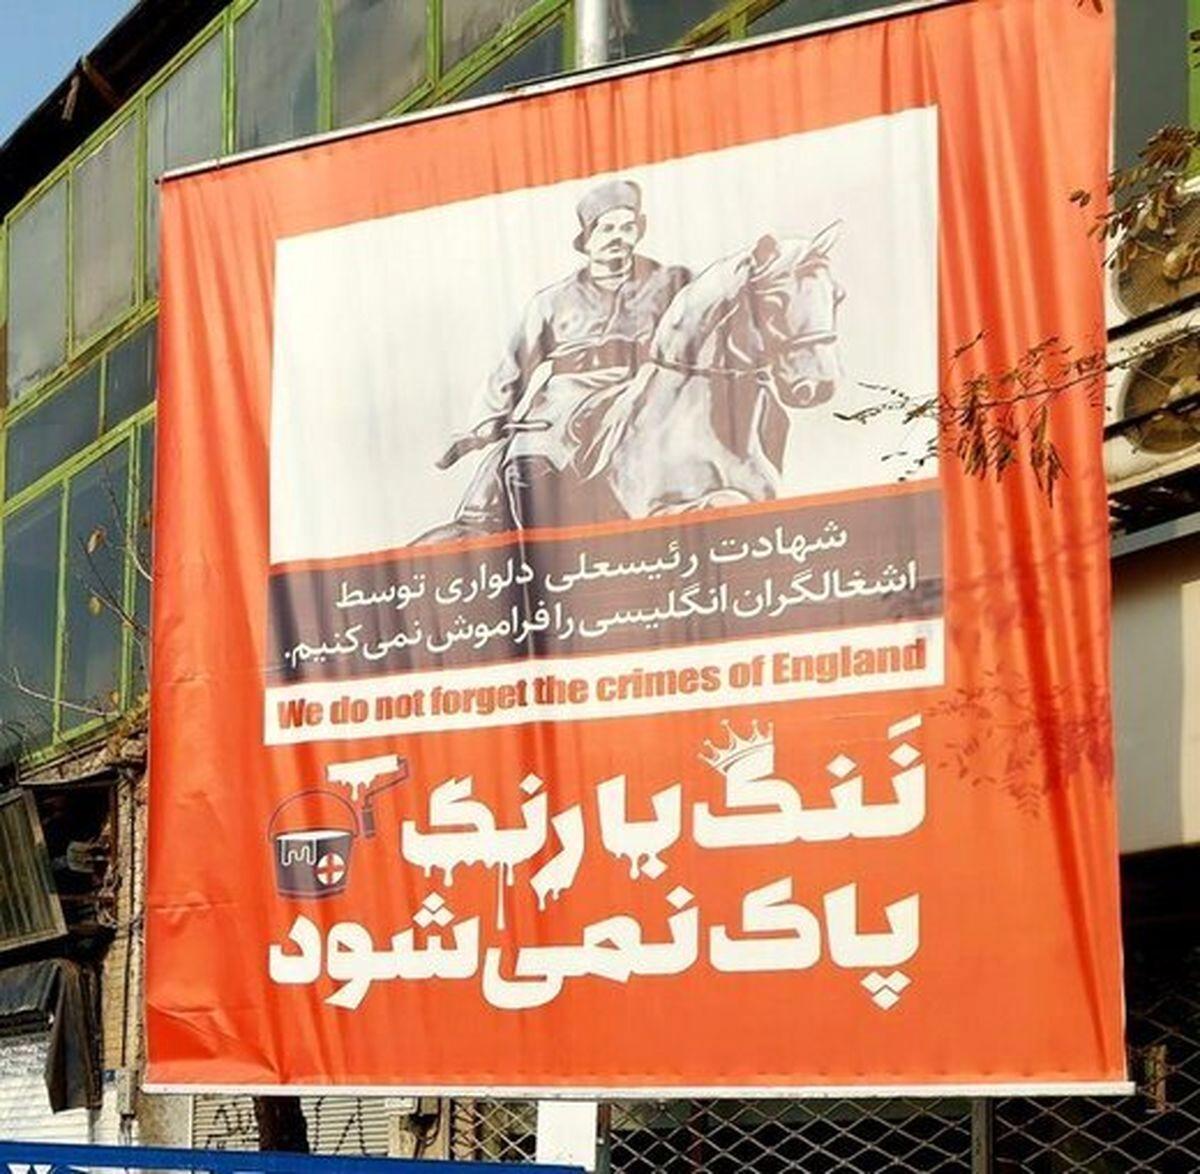 واکنش عجیب رسانه صداوسیما به بیلبوردهای جنجالی شهرداری تهران مقابل سفارت انگلیس +عکس